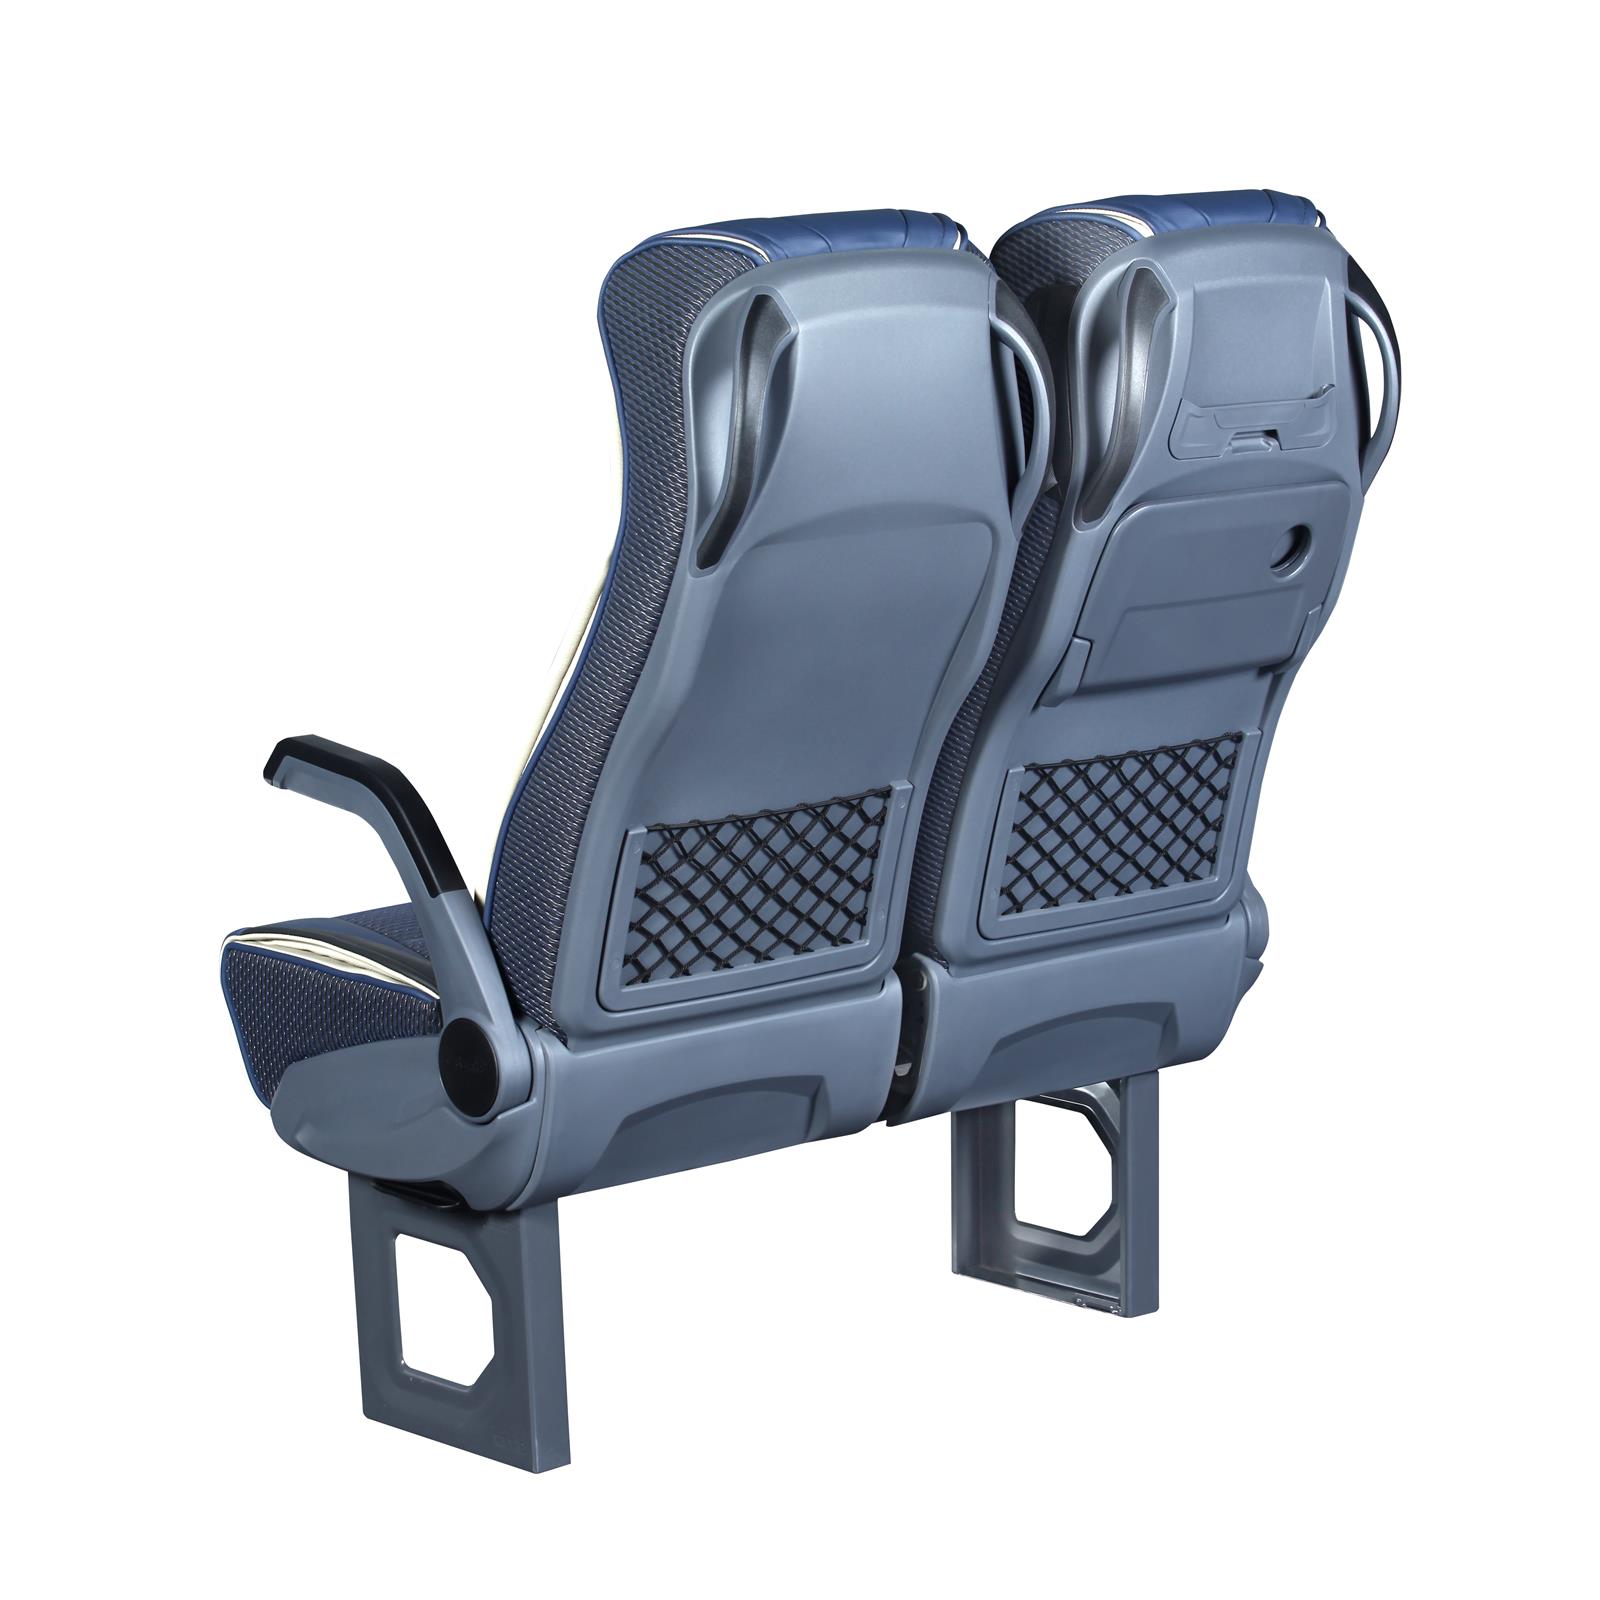 image shows Sege Passenger 410 Bus Seat